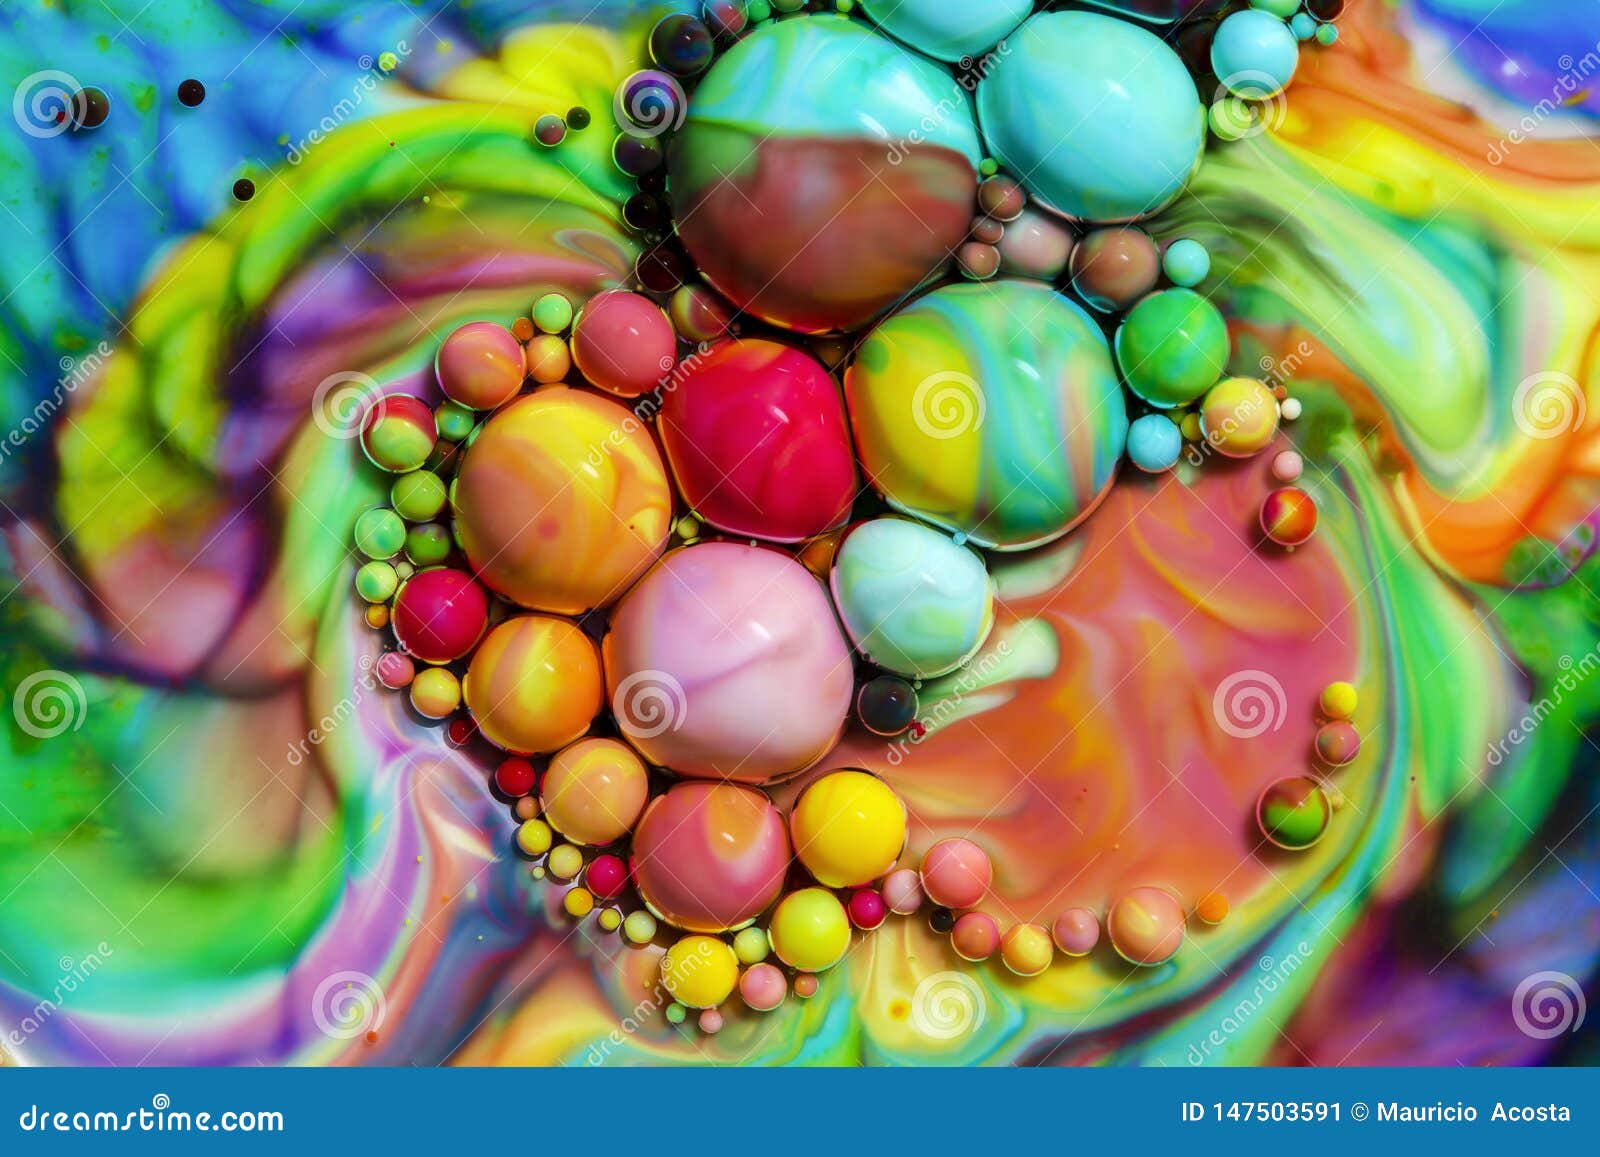 Fotografia macro das bolhas coloridas LXXIII. Fotografia macro de bolhas coloridas em alguns l?quidos produzindo os microworlds breves vibrantes que eternalized em uma imagem